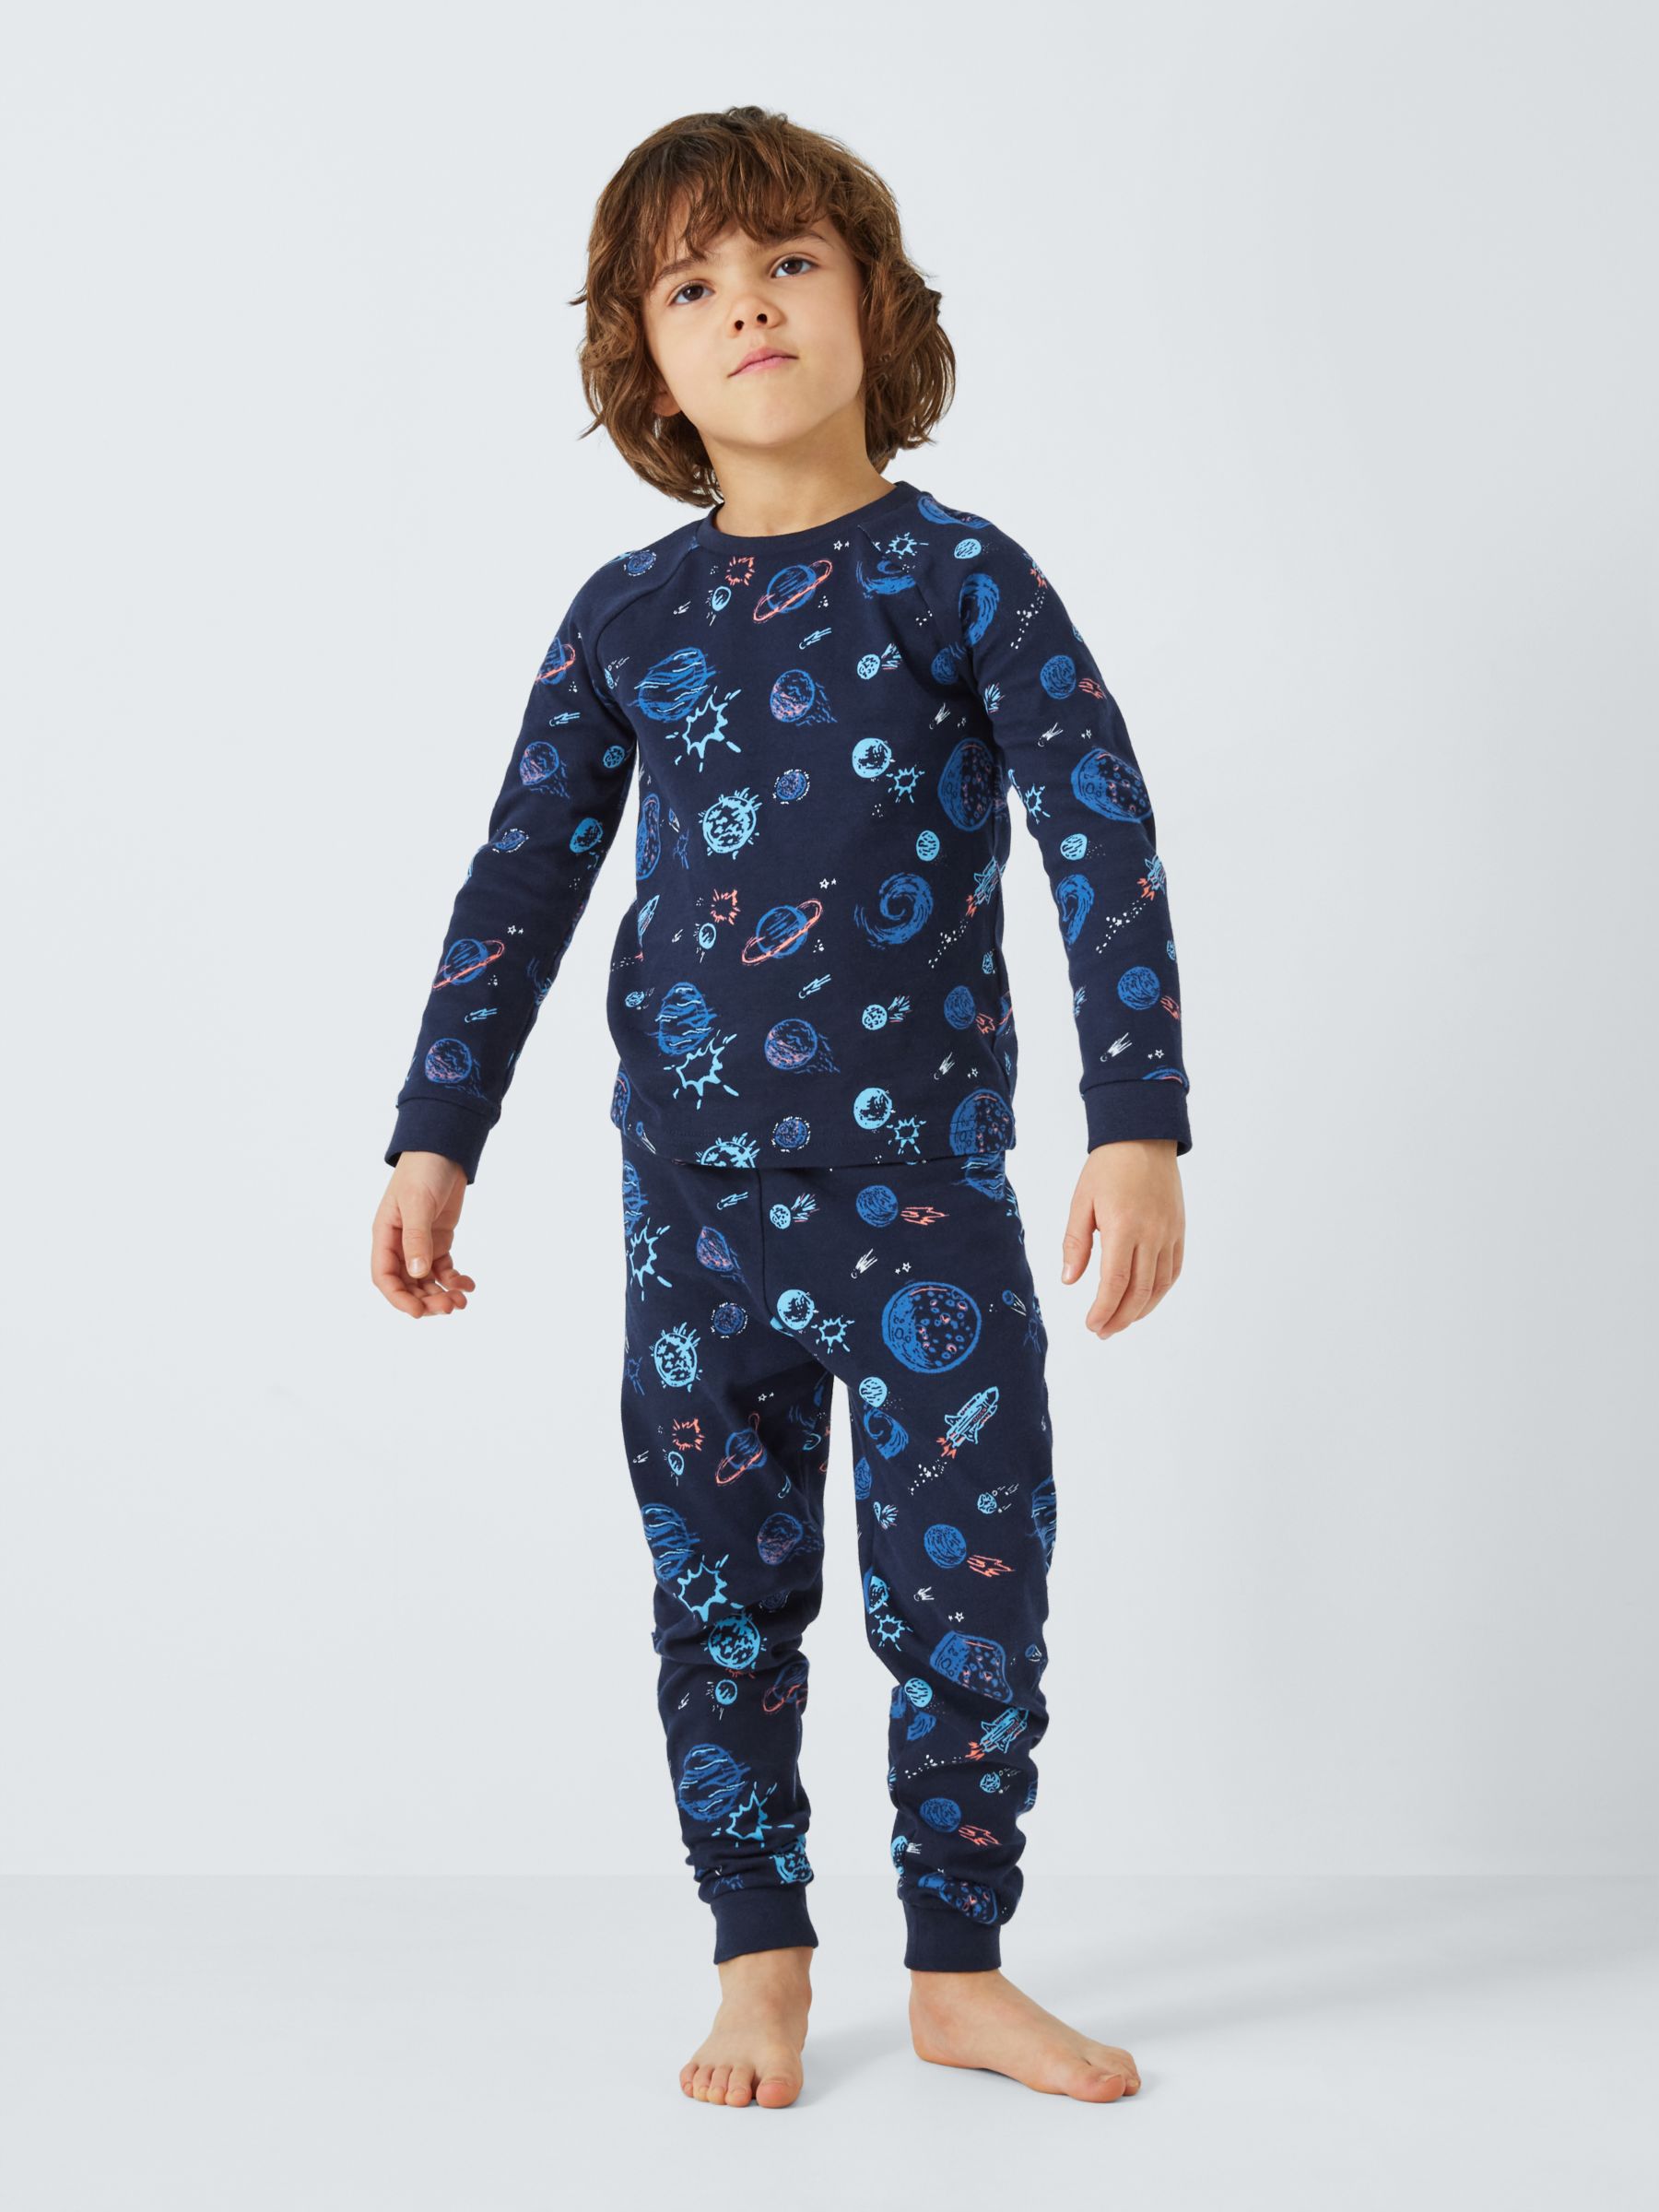 Buy John Lewis Kids' Outer Space Glow in the Dark Pyjamas, Pack of 2, Grey/Multi Online at johnlewis.com